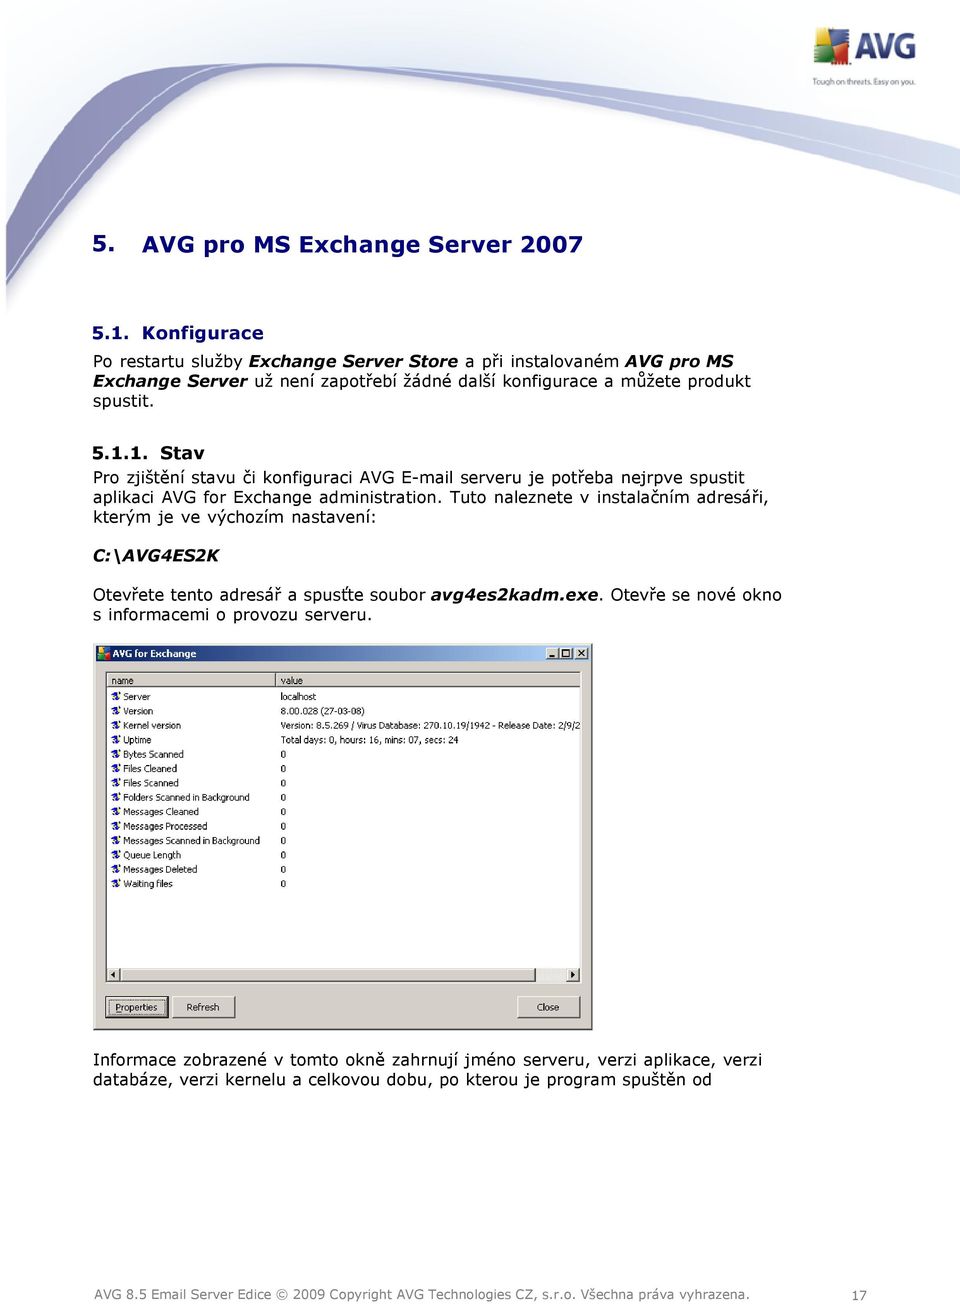 1. Stav Pro zjištění stavu či konfiguraci AVG E-mail serveru je potřeba nejrpve spustit aplikaci AVG for Exchange administration.